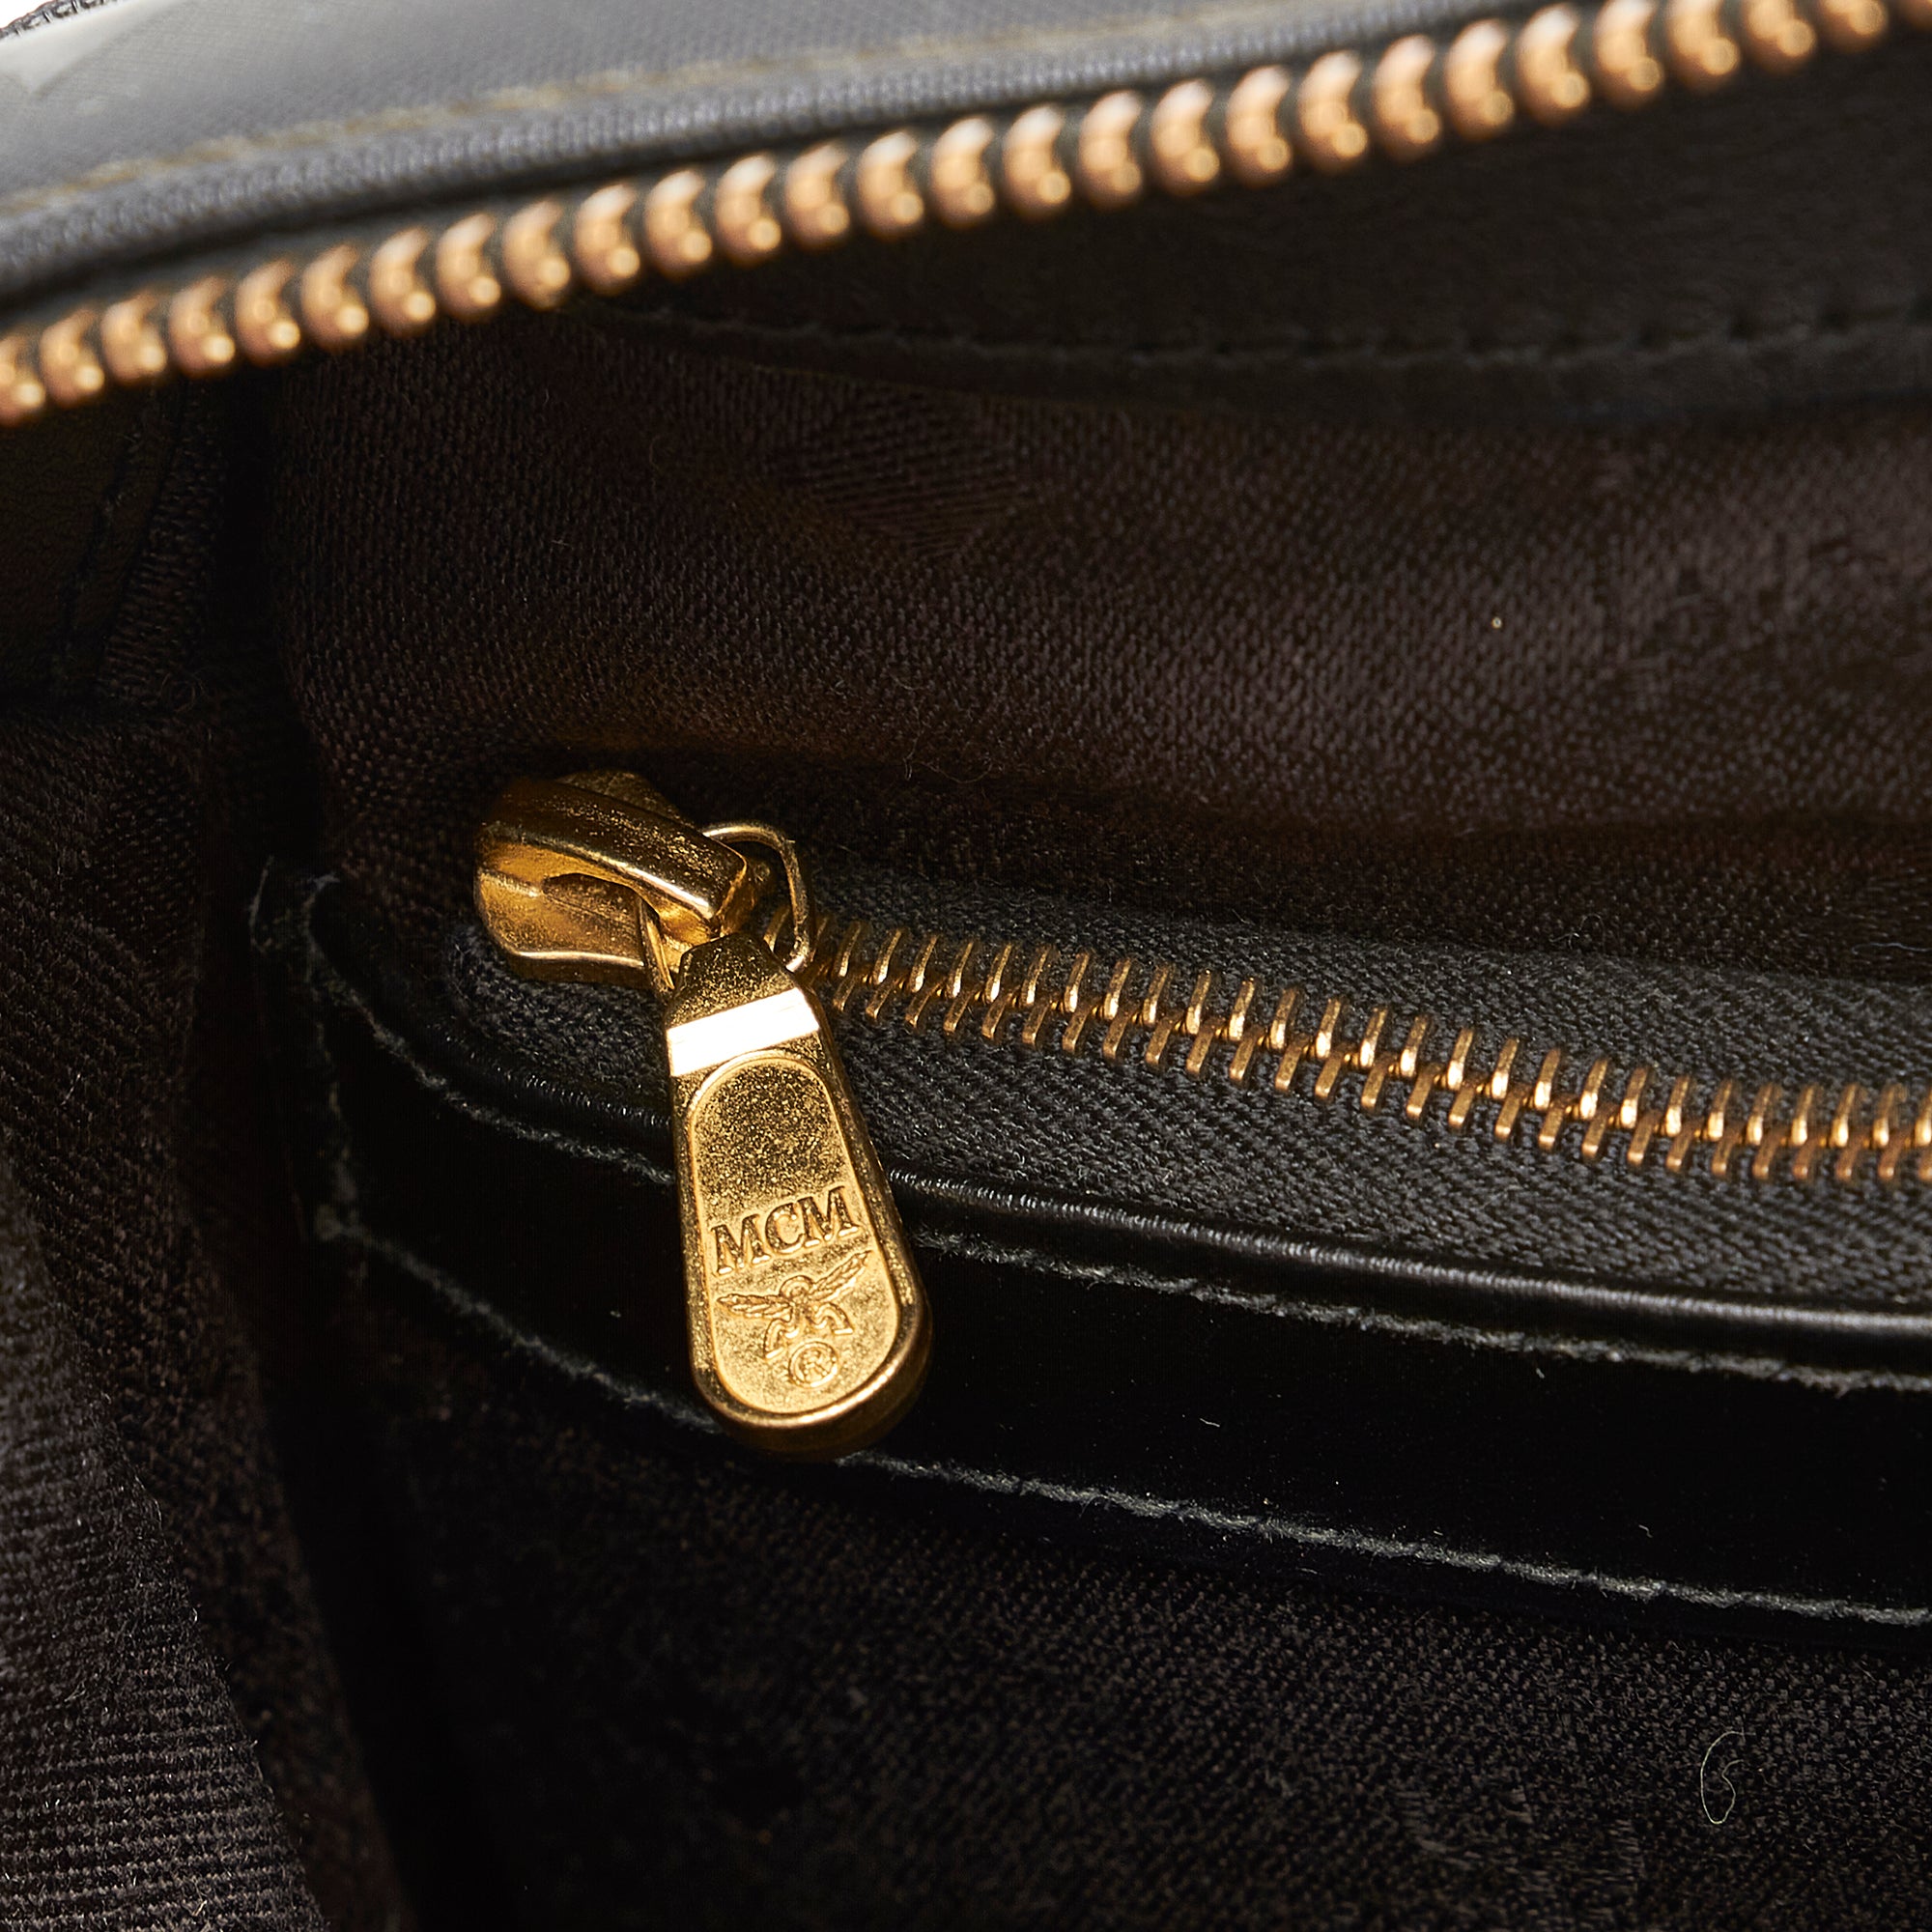 MCM Visetos Boston Bag - Black Handle Bags, Handbags - W3049450